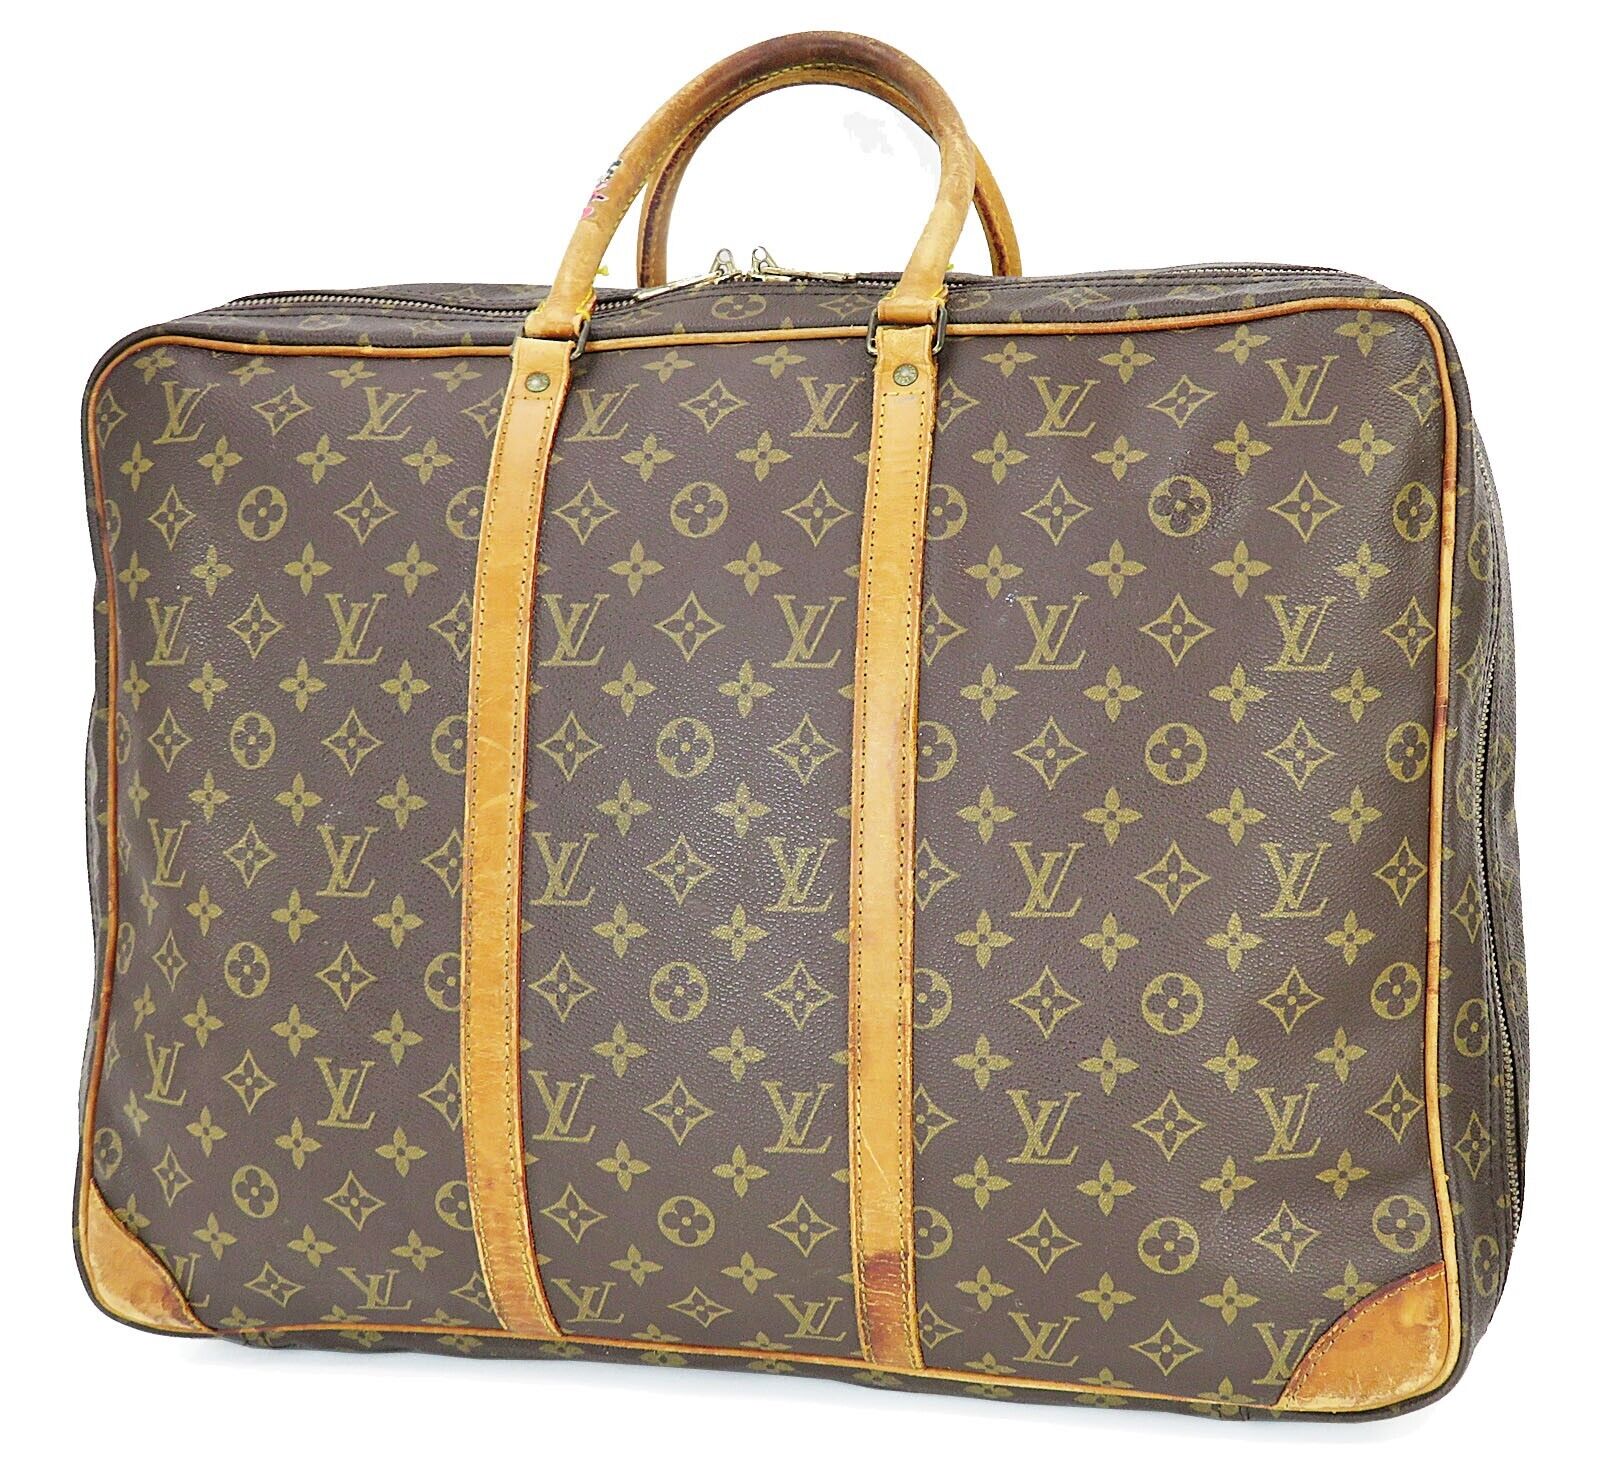 Authentic LOUIS VUITTON Sirius 50 Monogram Suitcase Travel Business Bag #44264